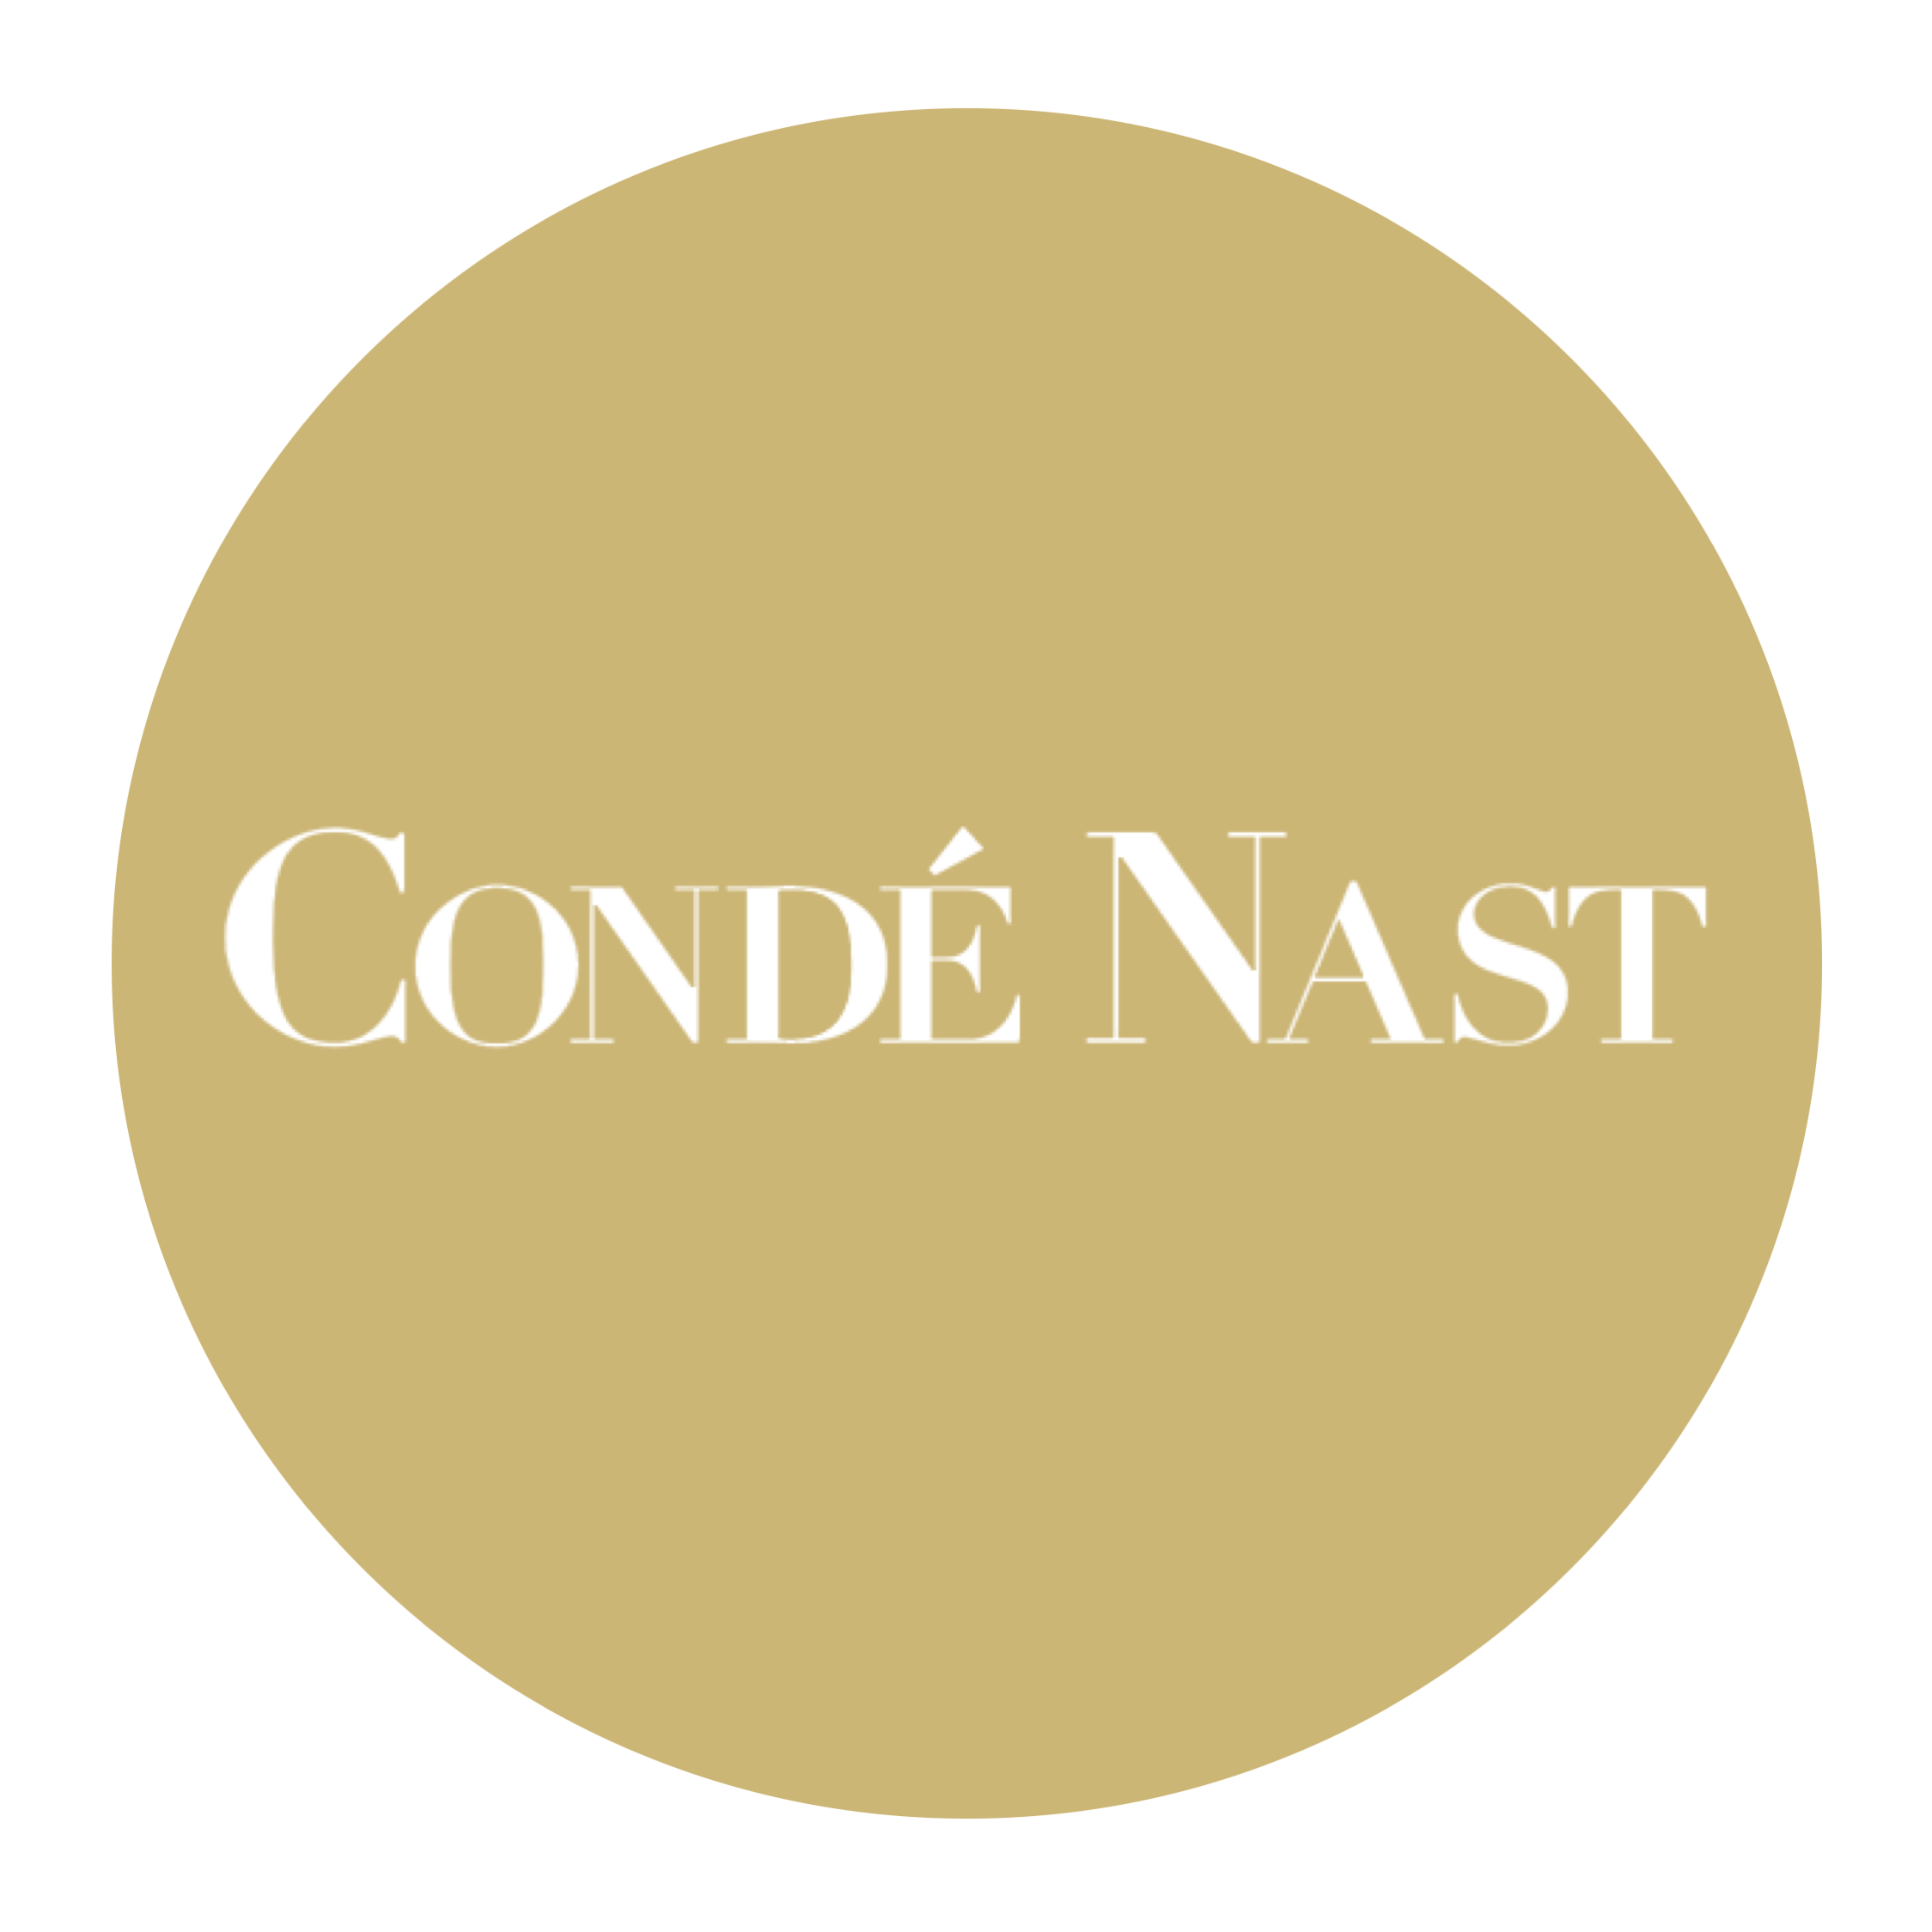 Conde Nast Publications Ltd